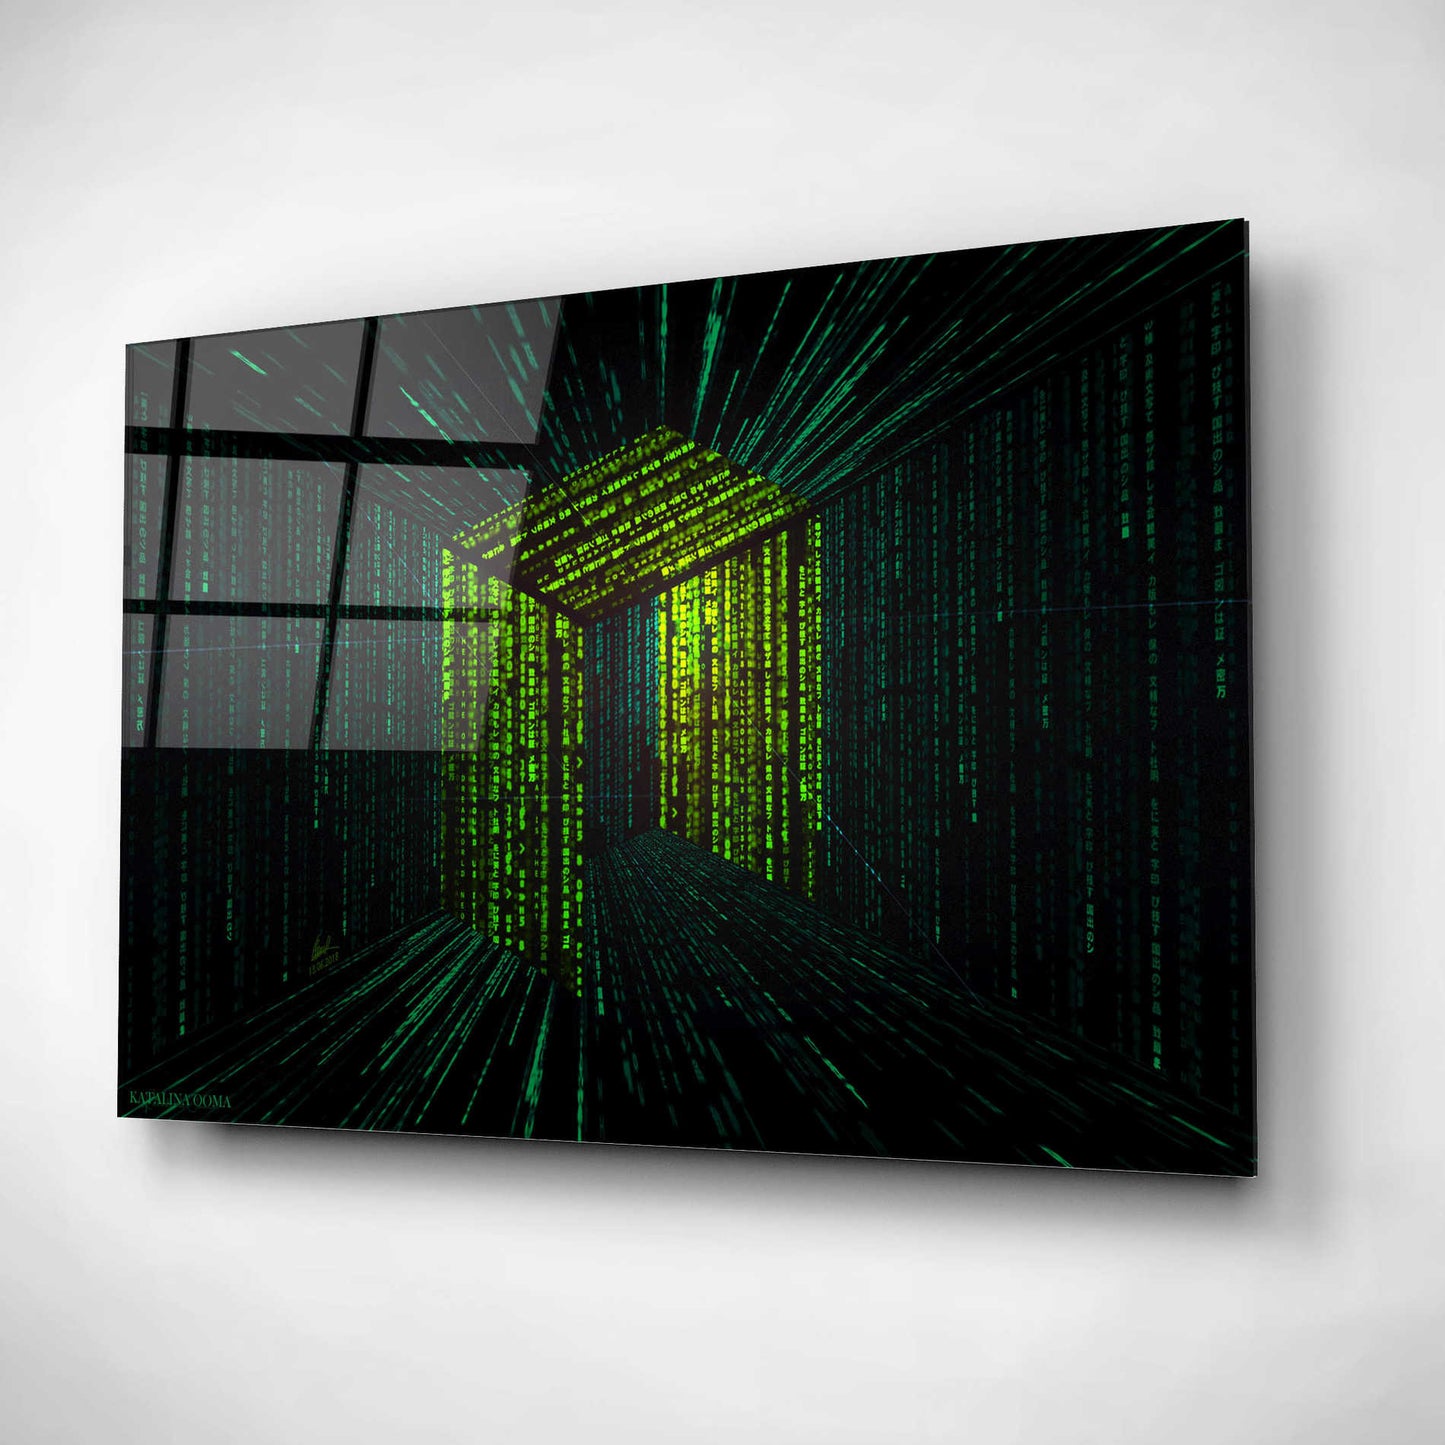 Epic Art 'Digital Rain Neo Crypto' by Katalina, Acrylic Glass Wall Art,24x16